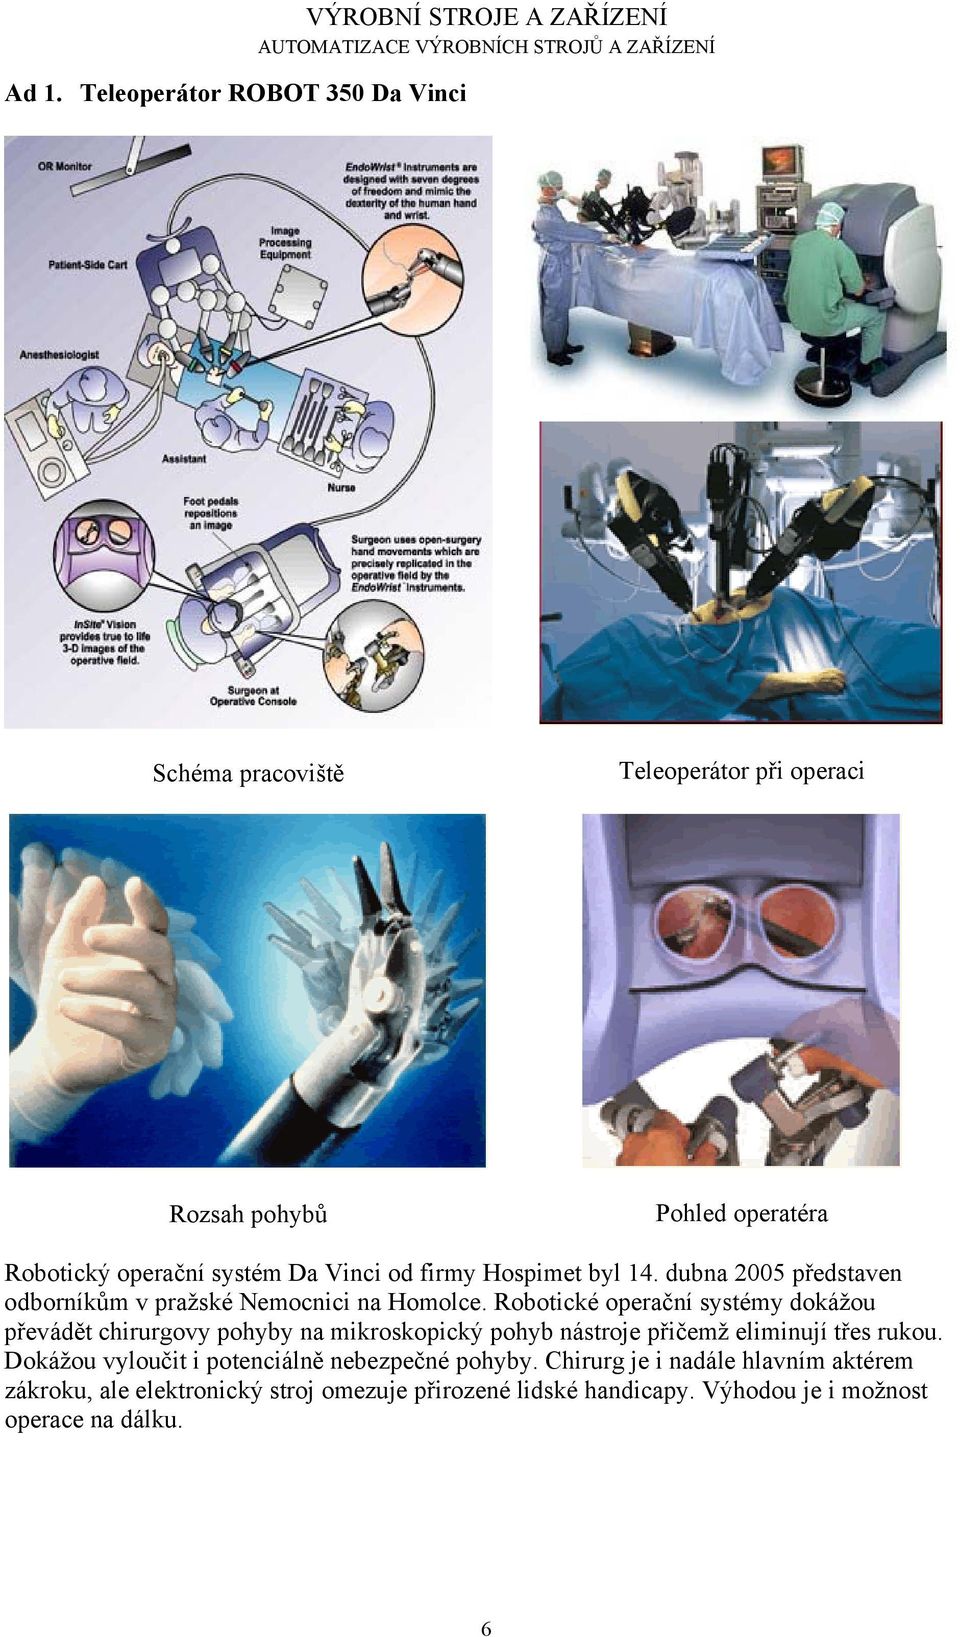 Robotické operační systémy dokážou převádět chirurgovy pohyby na mikroskopický pohyb nástroje přičemž eliminují třes rukou.